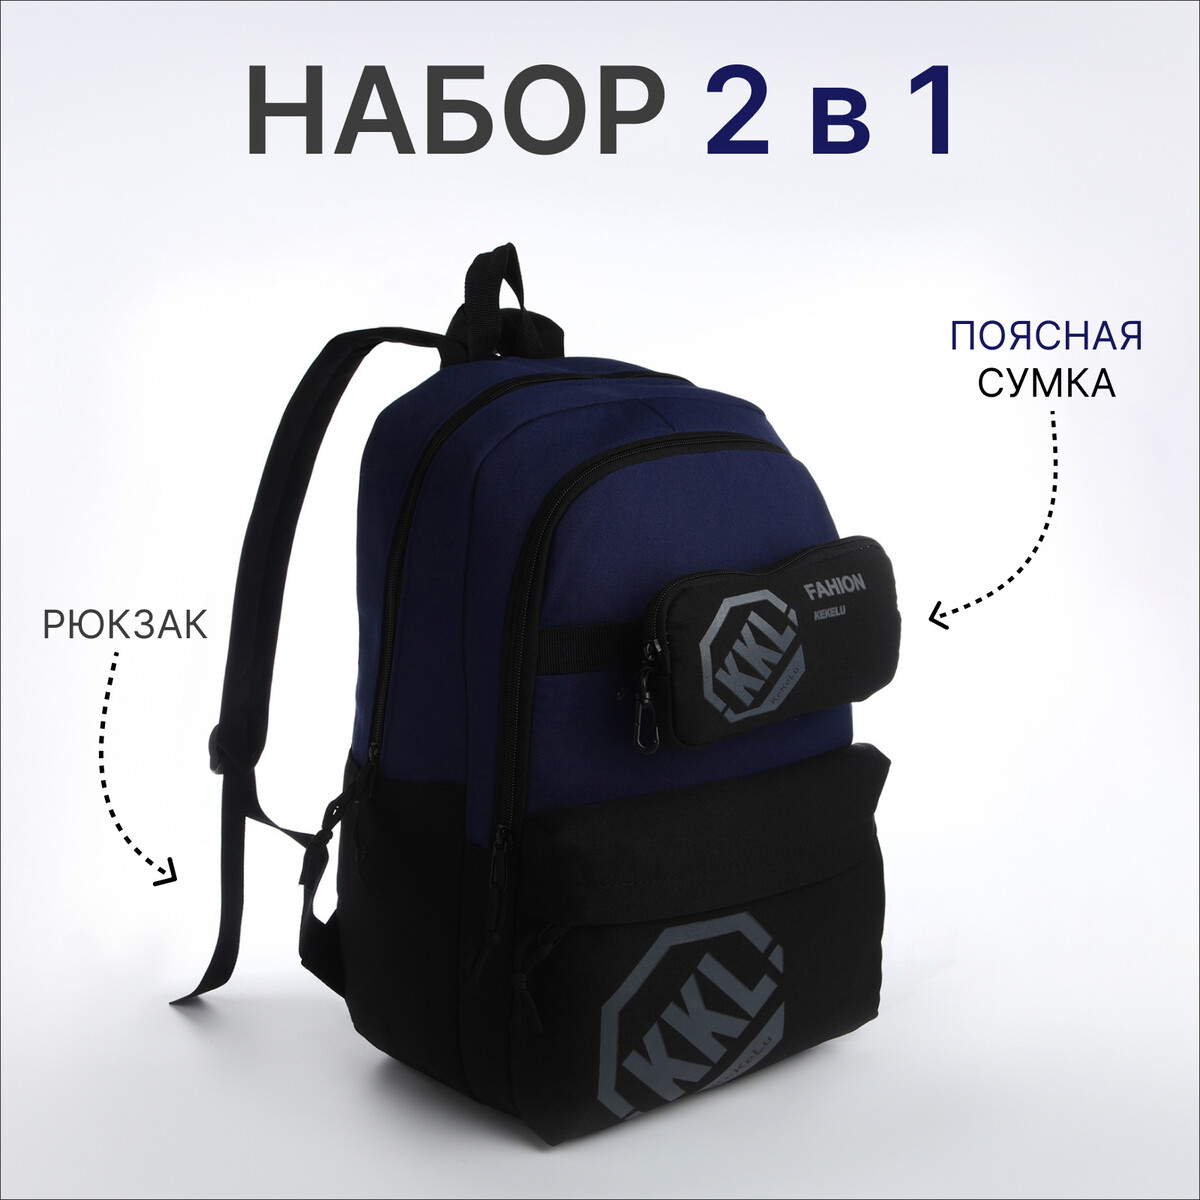 Рюкзак молодежный из текстиля на молнии, 3 кармана, сумка, держатель для чемодана, цвет черный/синий рюкзак молодежный на молнии 4 кармана синий